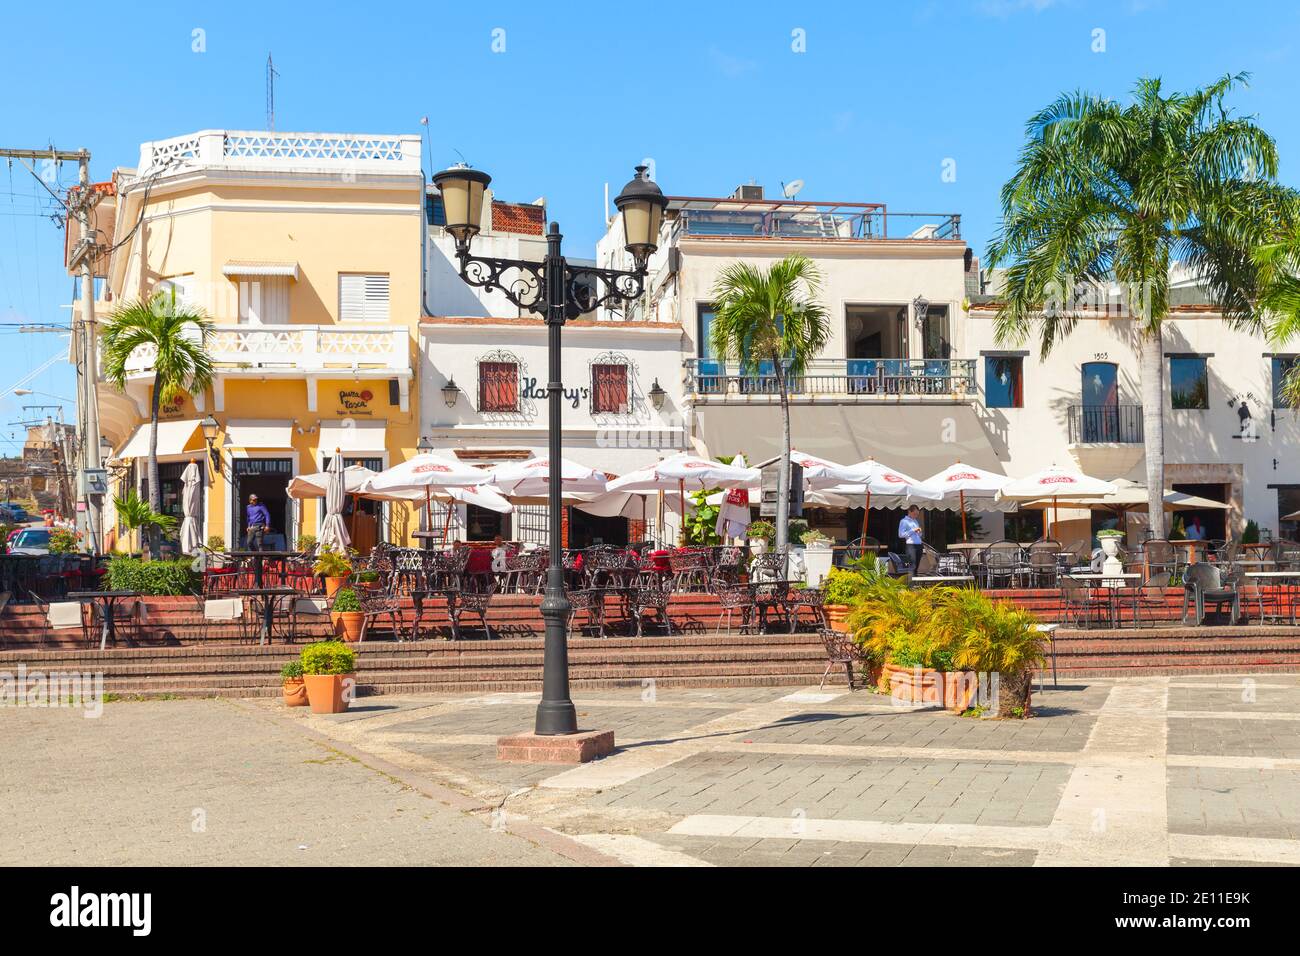 Santo Domingo, Repubblica Dominicana - 11 gennaio 2017: Ristoranti locali e case a Plaza de Espana, vista sulla strada con la gente comune Foto Stock